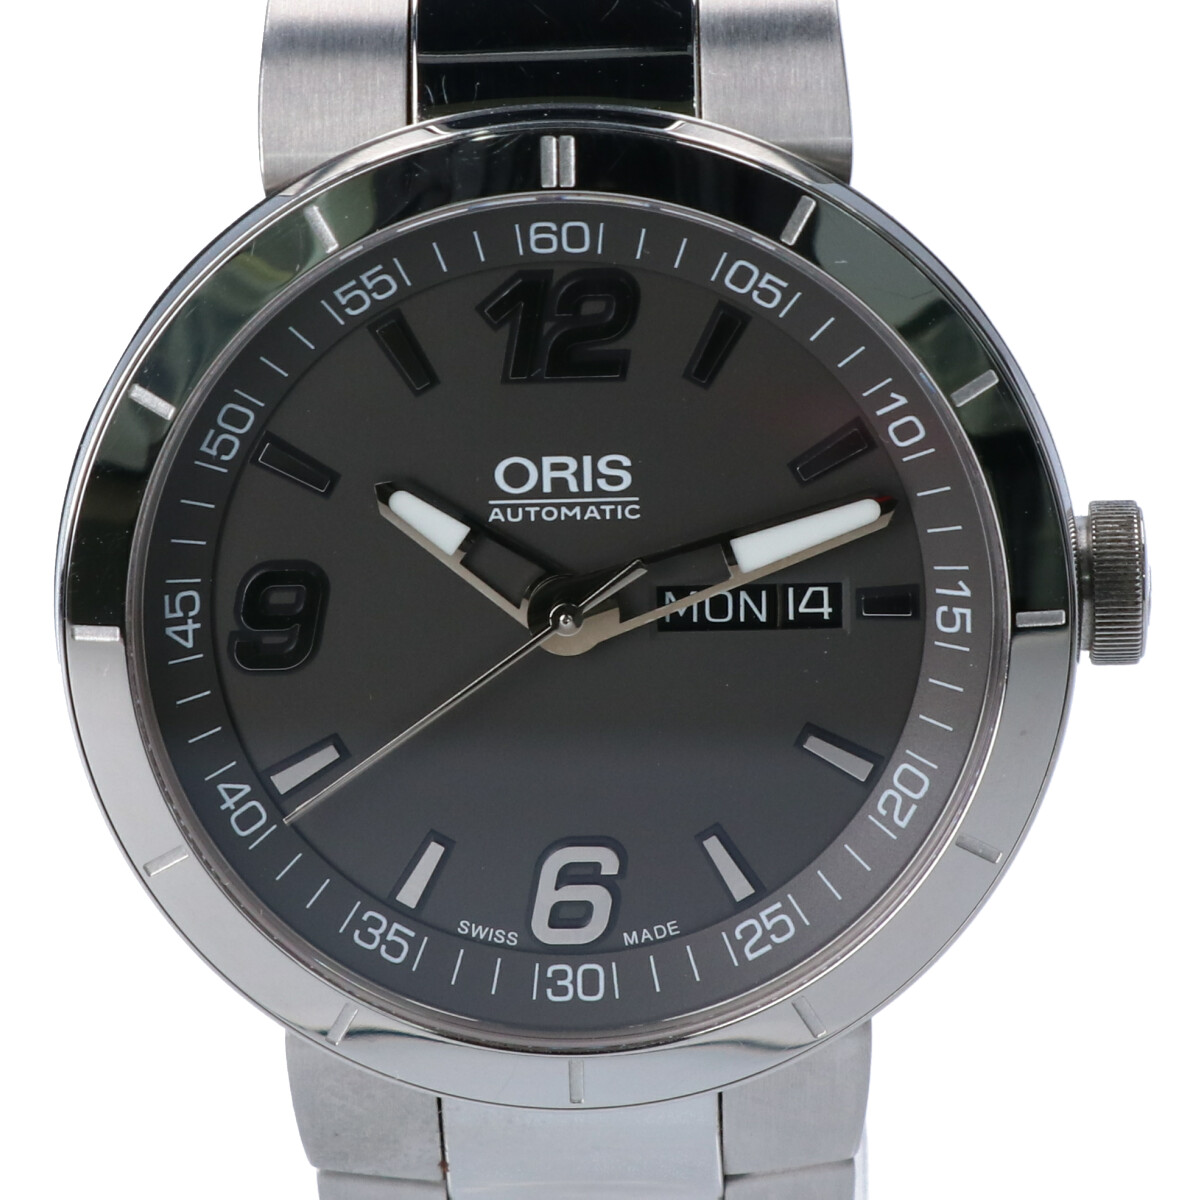 オリスの735-7651-4163M TT1 デイデイト シースルーバック 自動巻き時計の買取実績です。